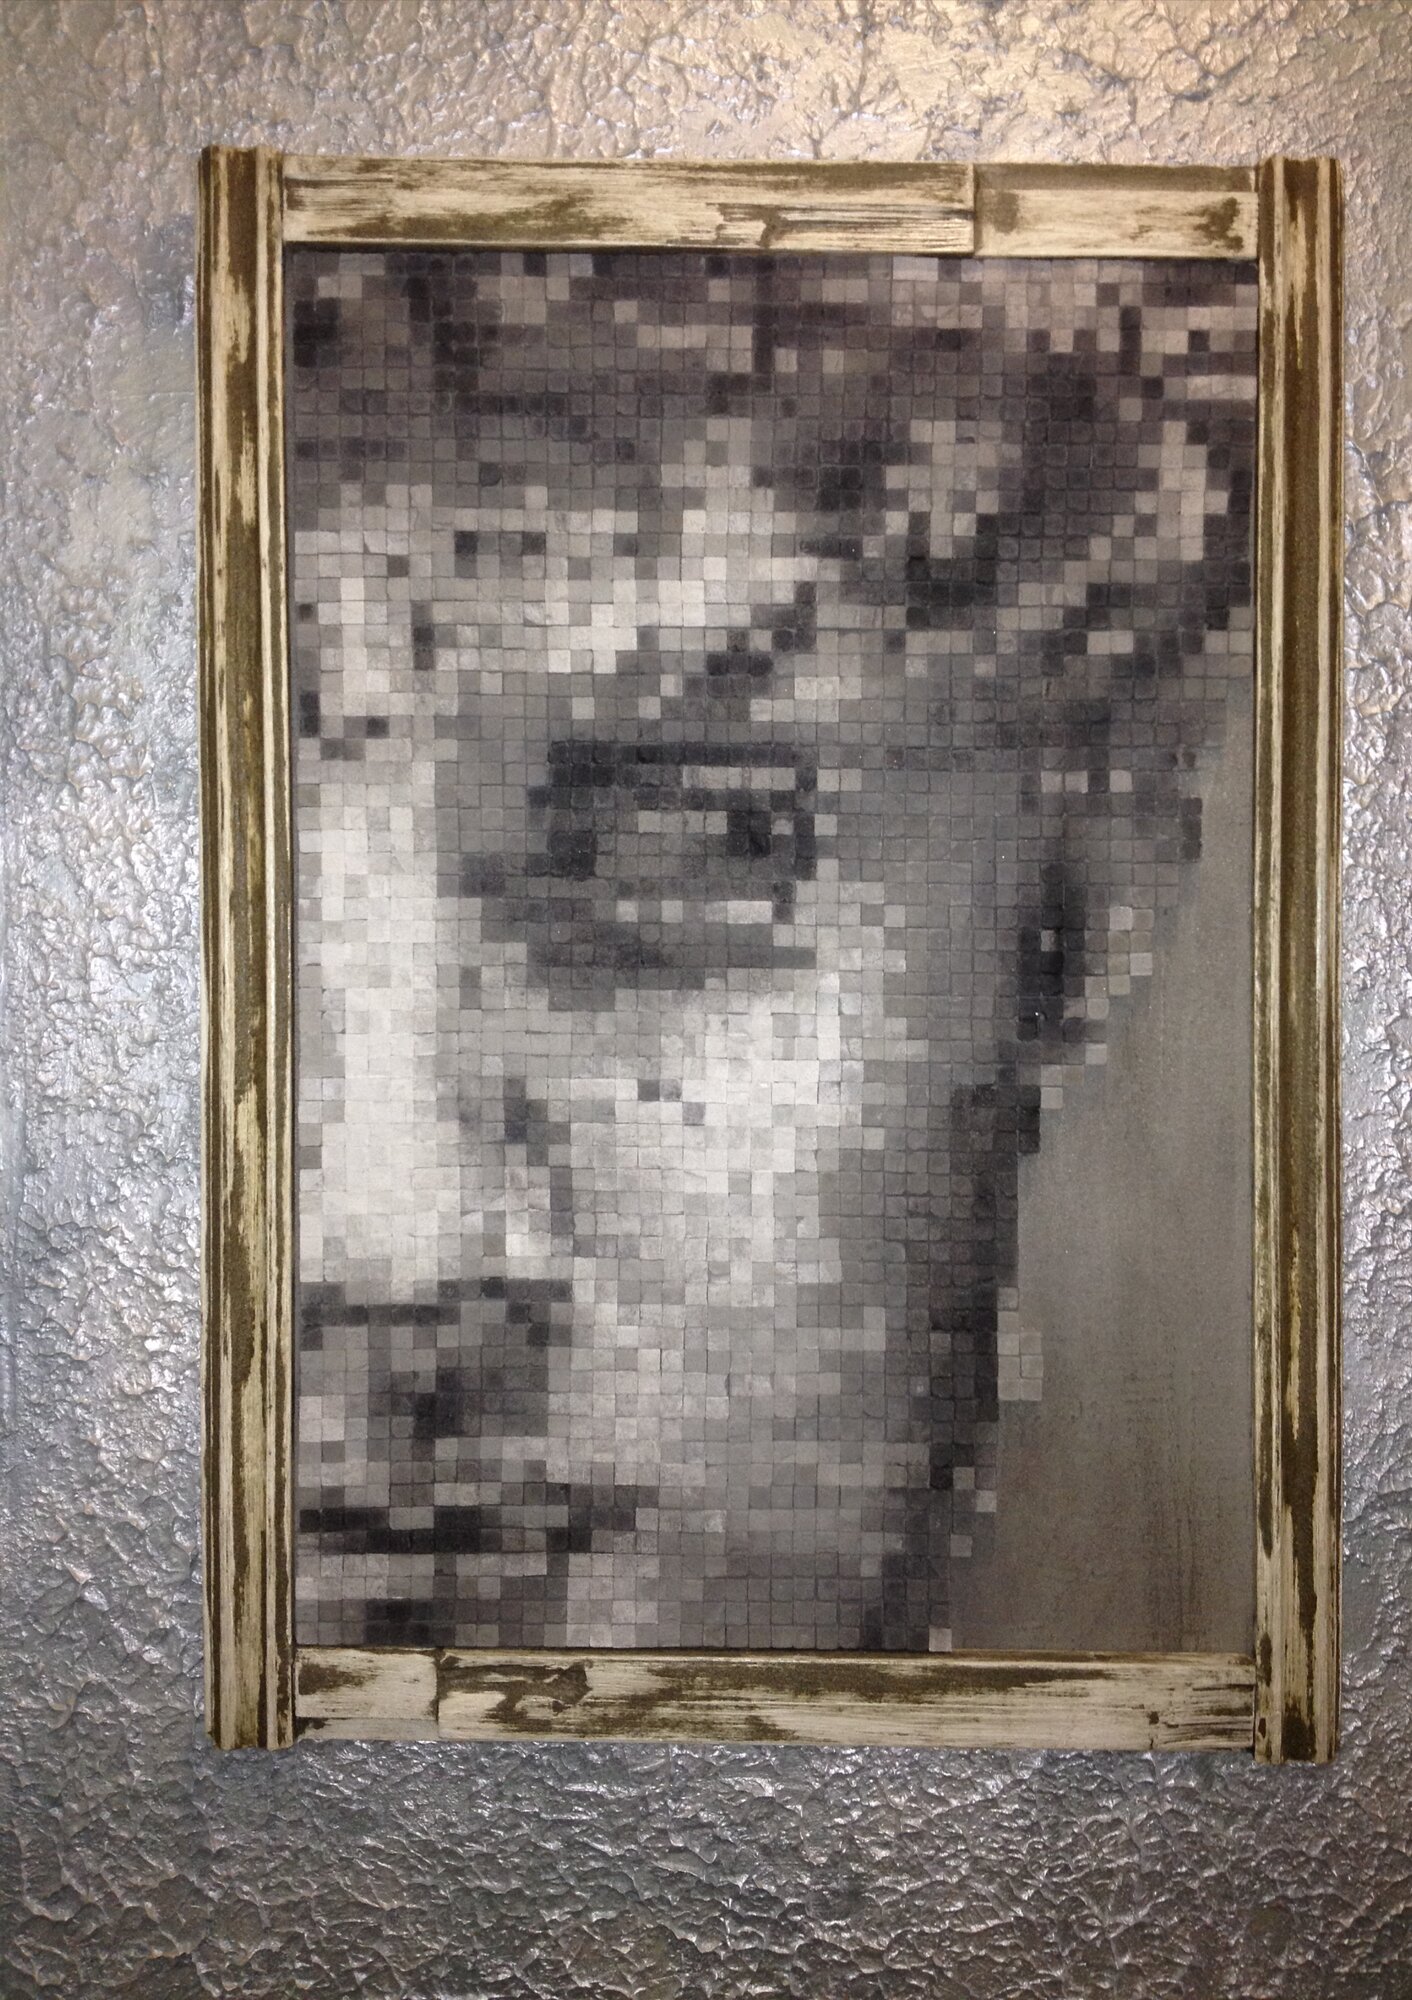 Пиксельная мозаика "Давид" из бетона и гипса. Интерьерное панно